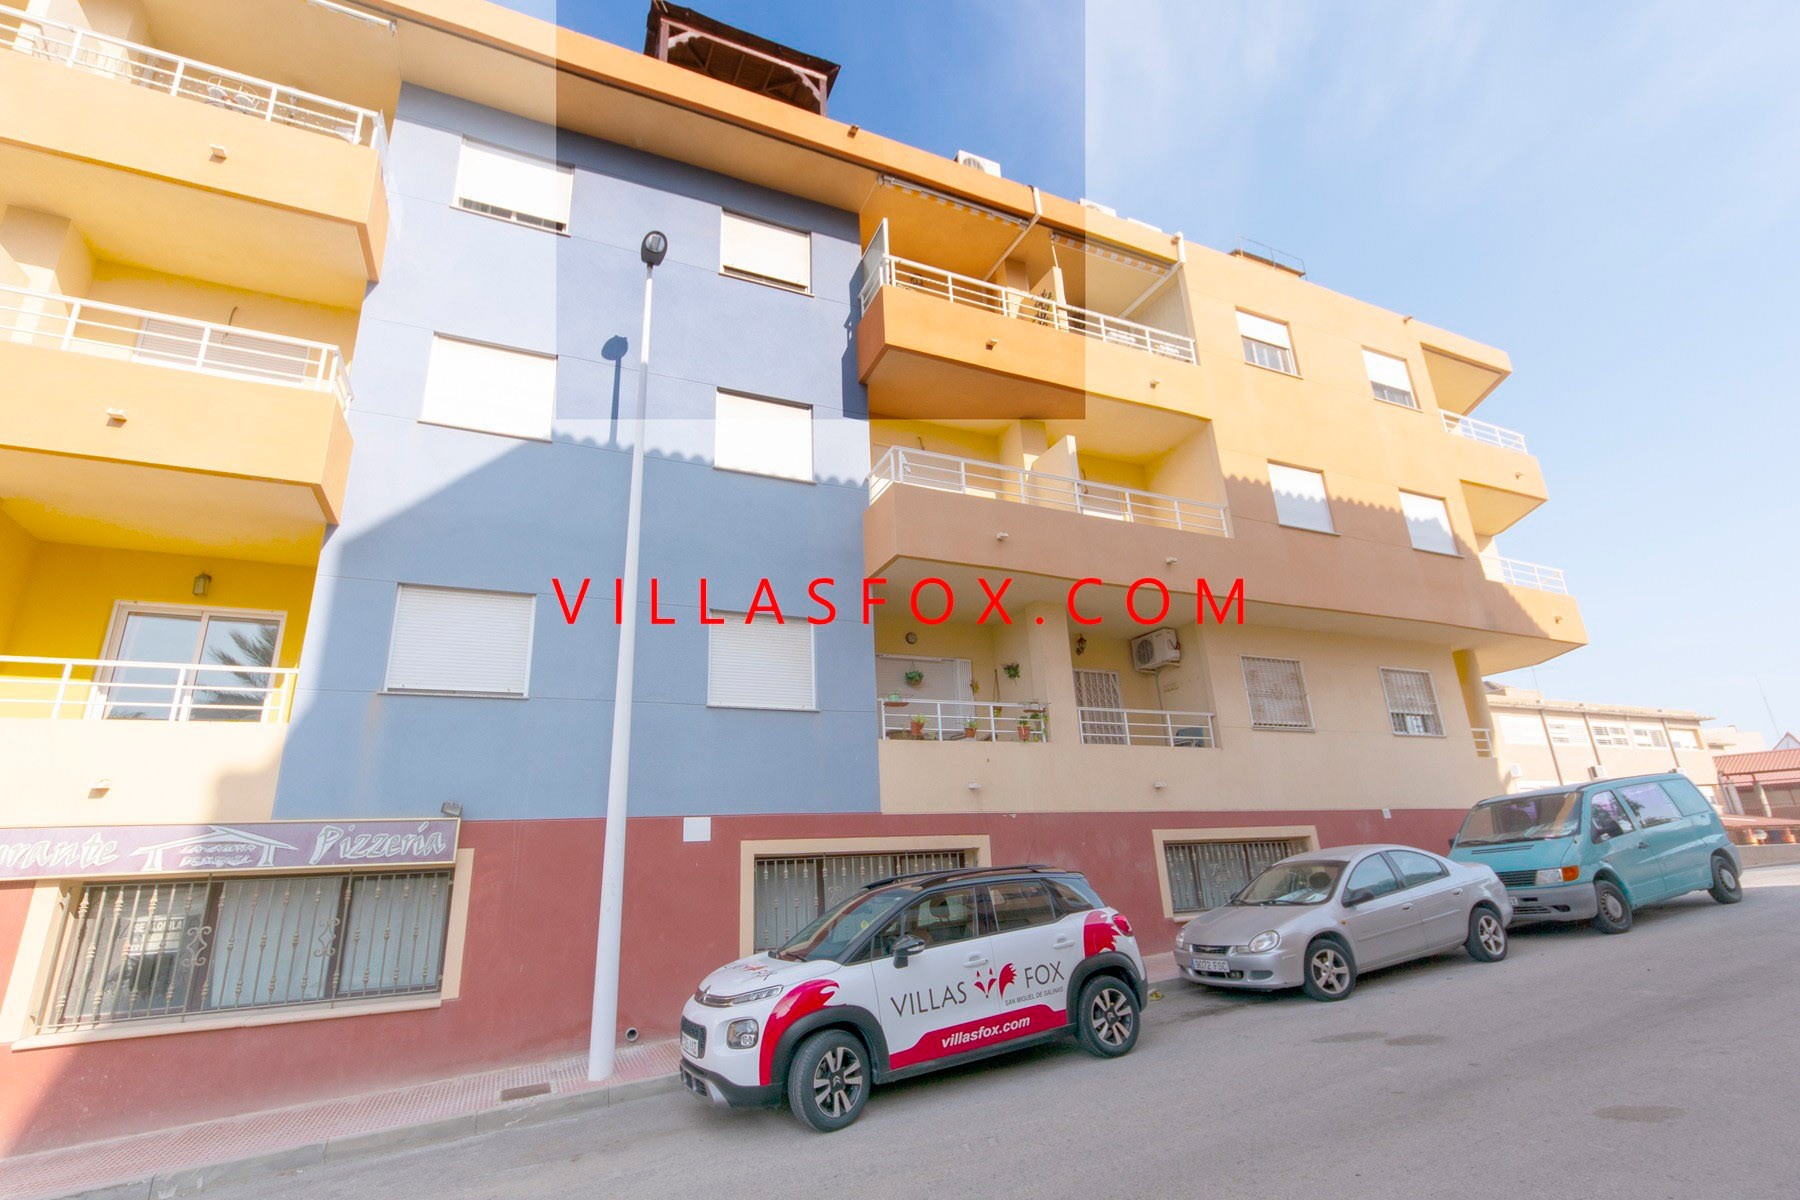 1 Apartamento San Miguel de Salinas no centro da cidade por Villas Fox melhores agentes imobiliários 611039449965e